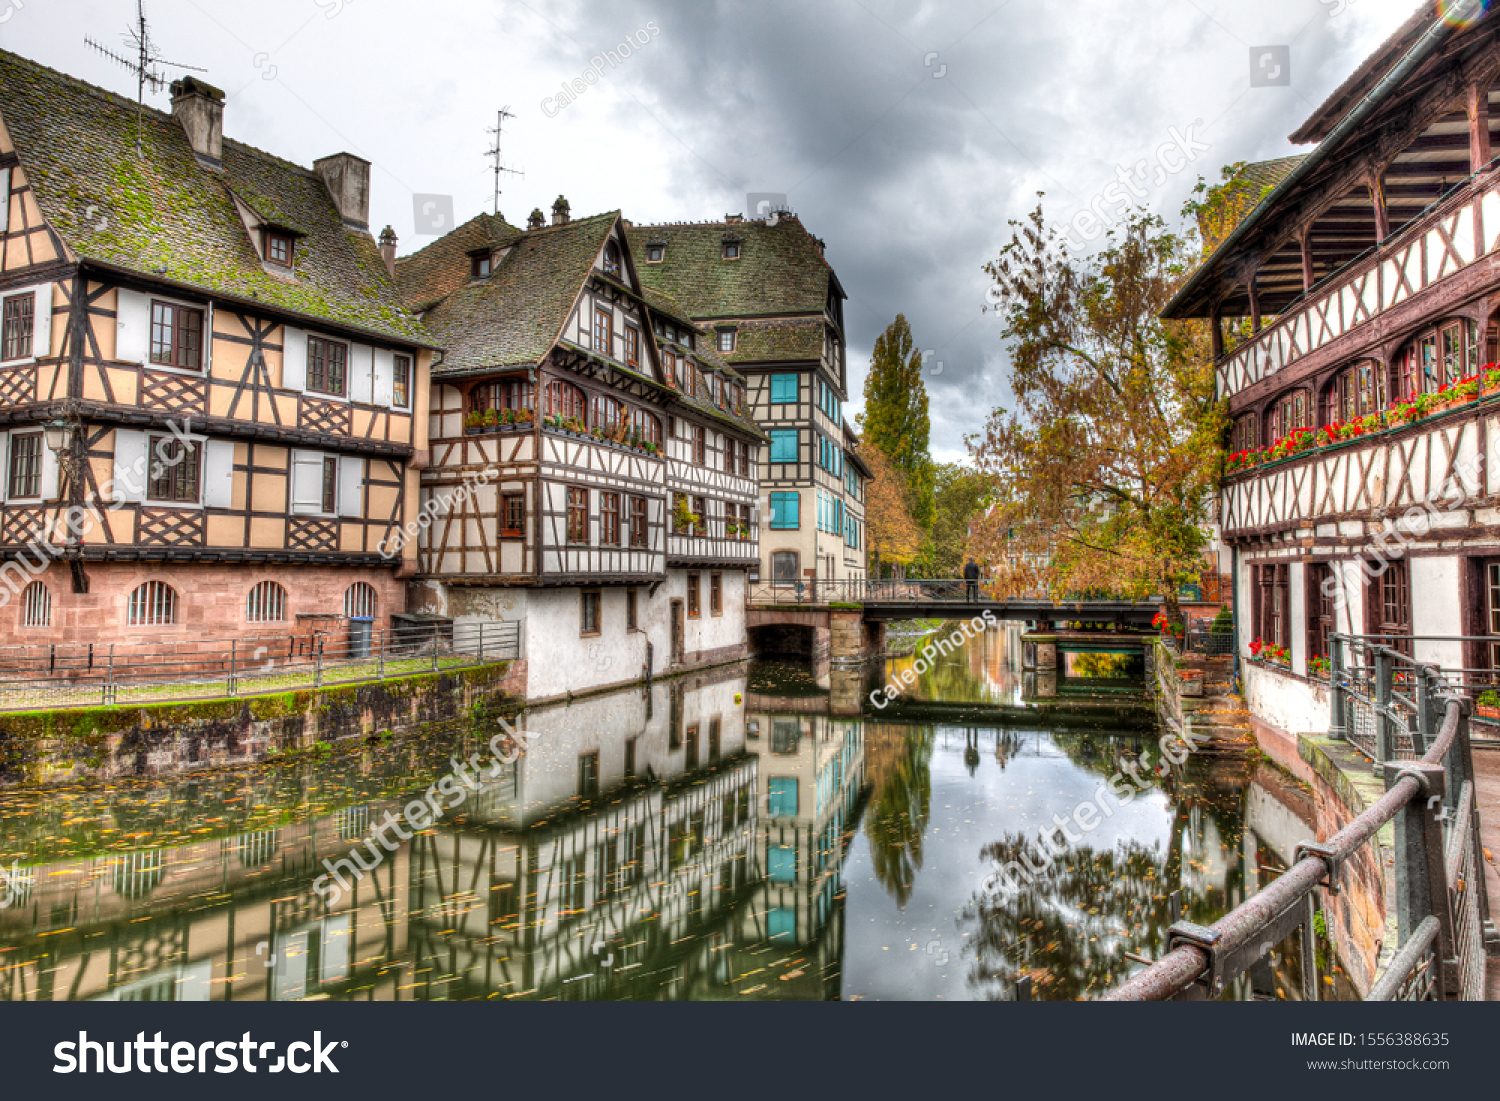 Petite France in Strasbourg, France #1556388635